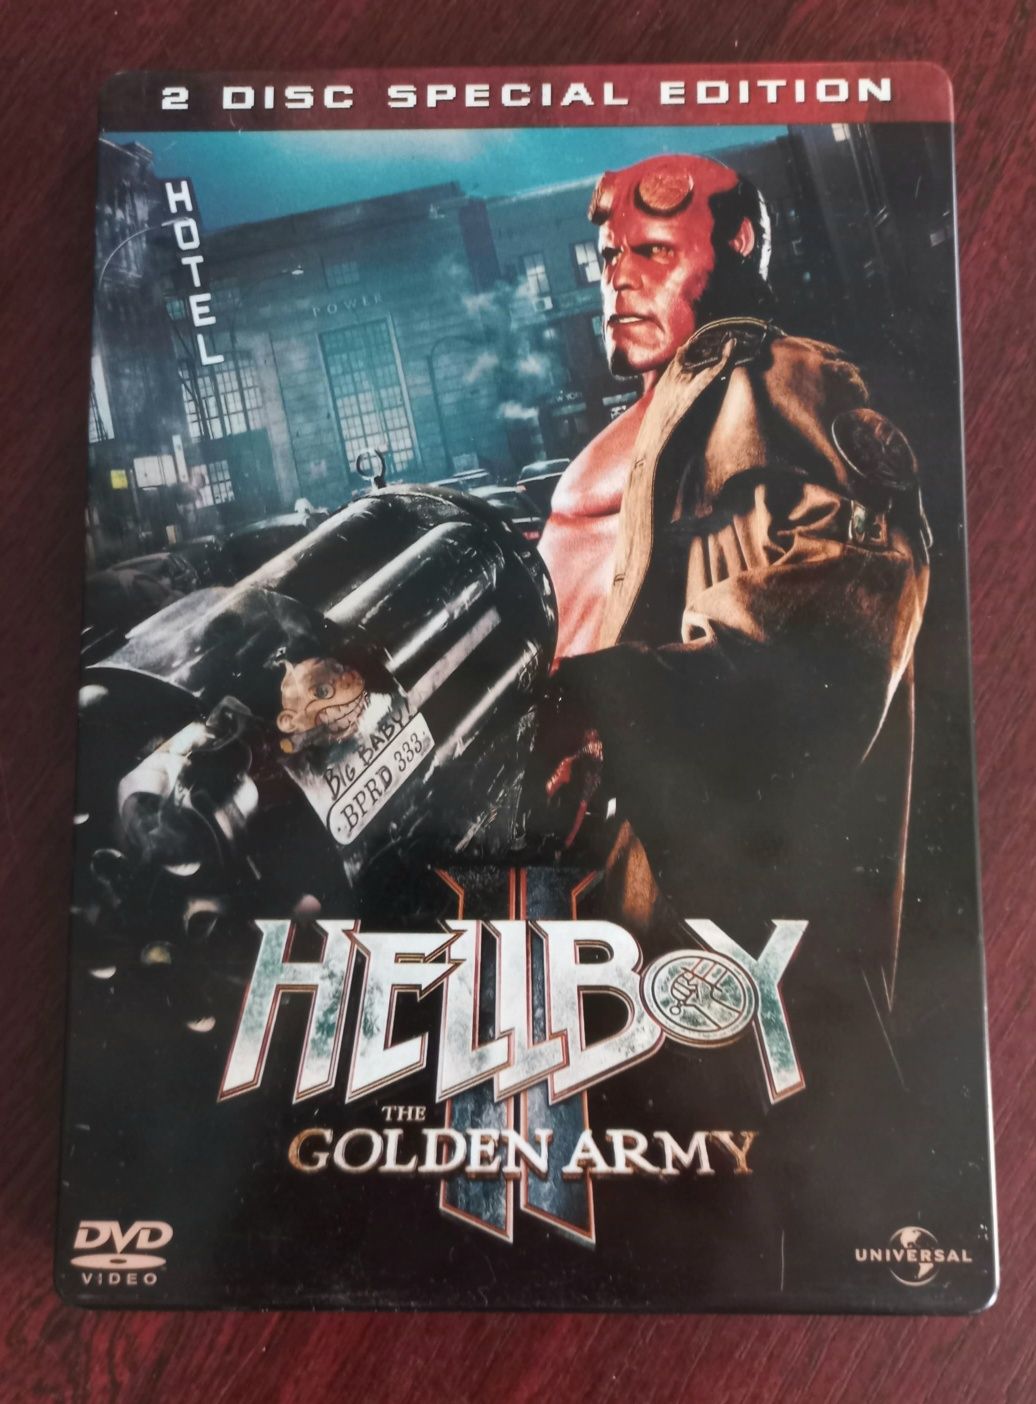 HELLBOY 2 THE GOLDEN ARMY DVD 2 Disk Stelbook Version.